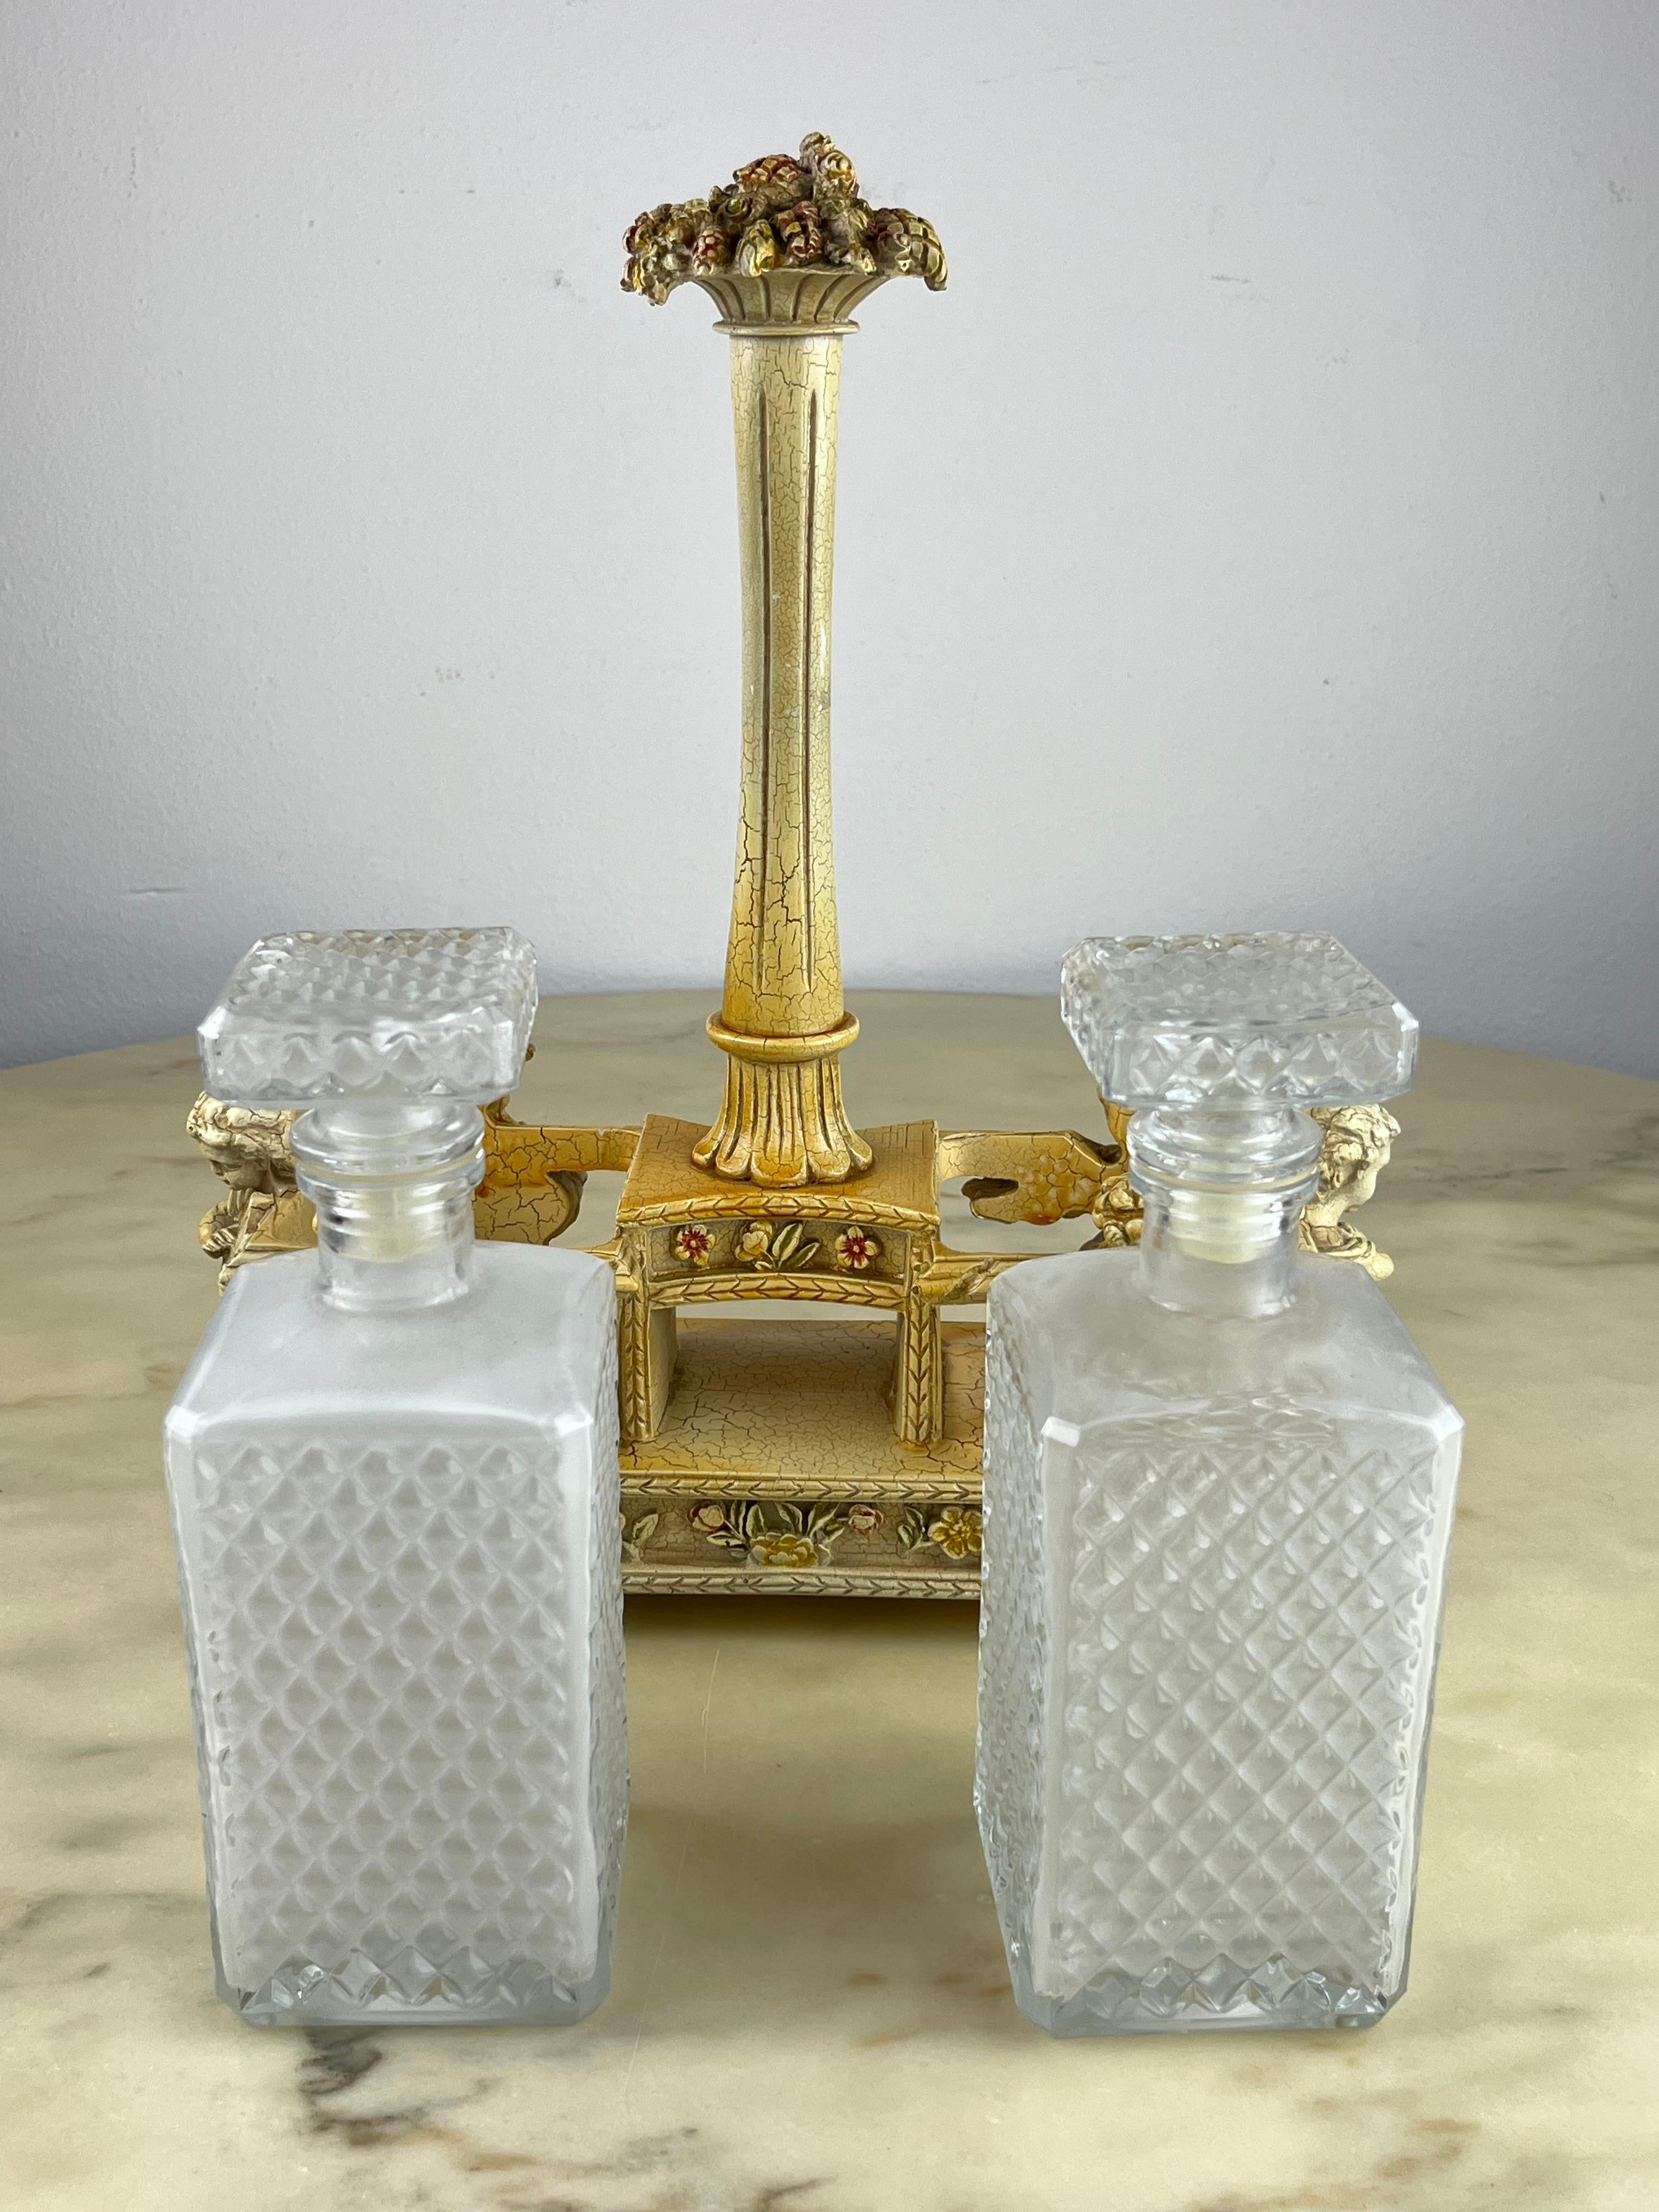 Mid-20th Century Table Set For Oil/Vinegar Bottles, Italy, 1960s For Sale